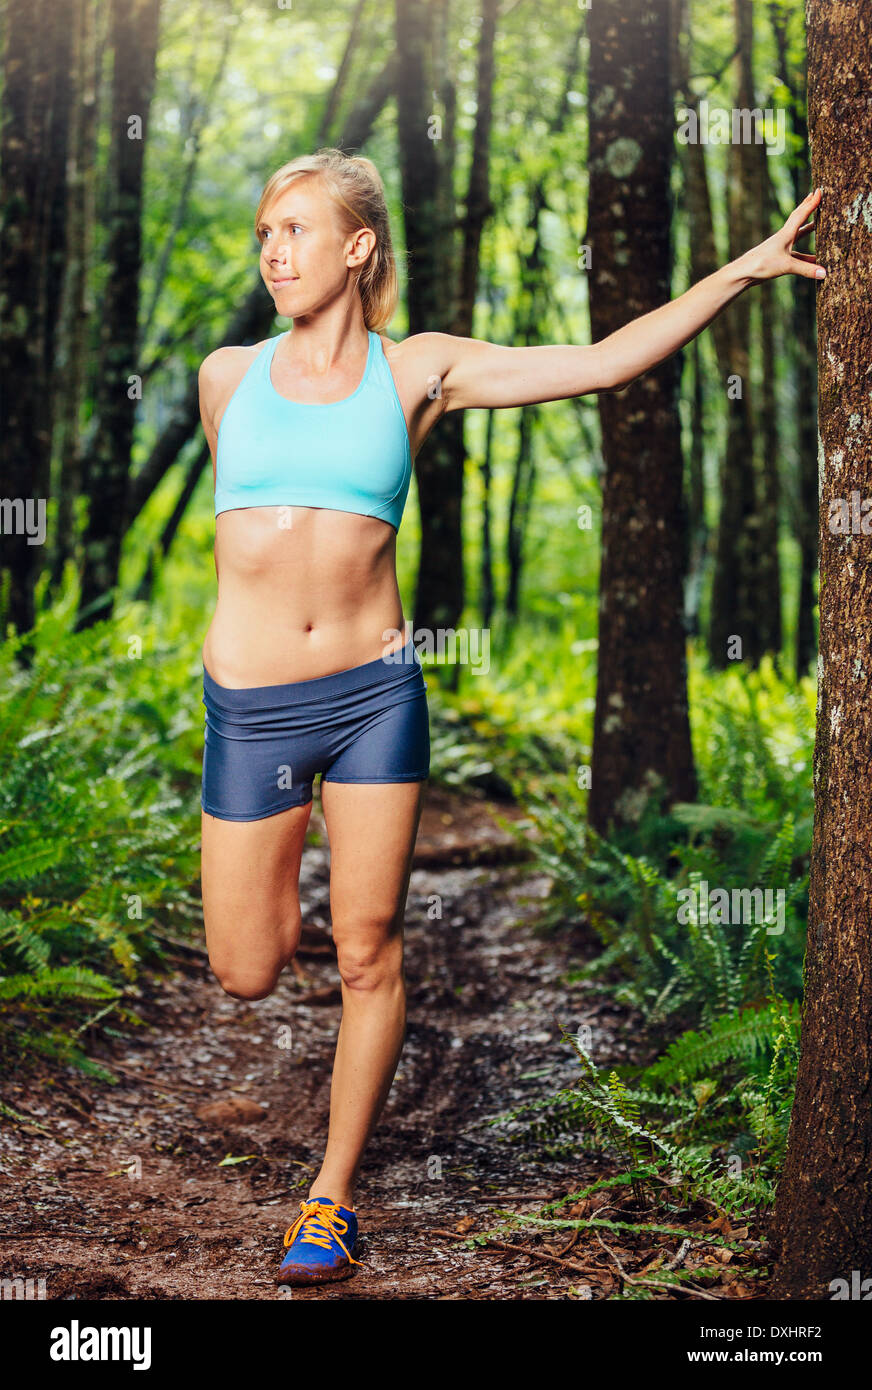 Sportliche Frau Stretching vor dem laufen im Wald. Aktiven, gesunden Lebensstil-Konzept. Stockfoto